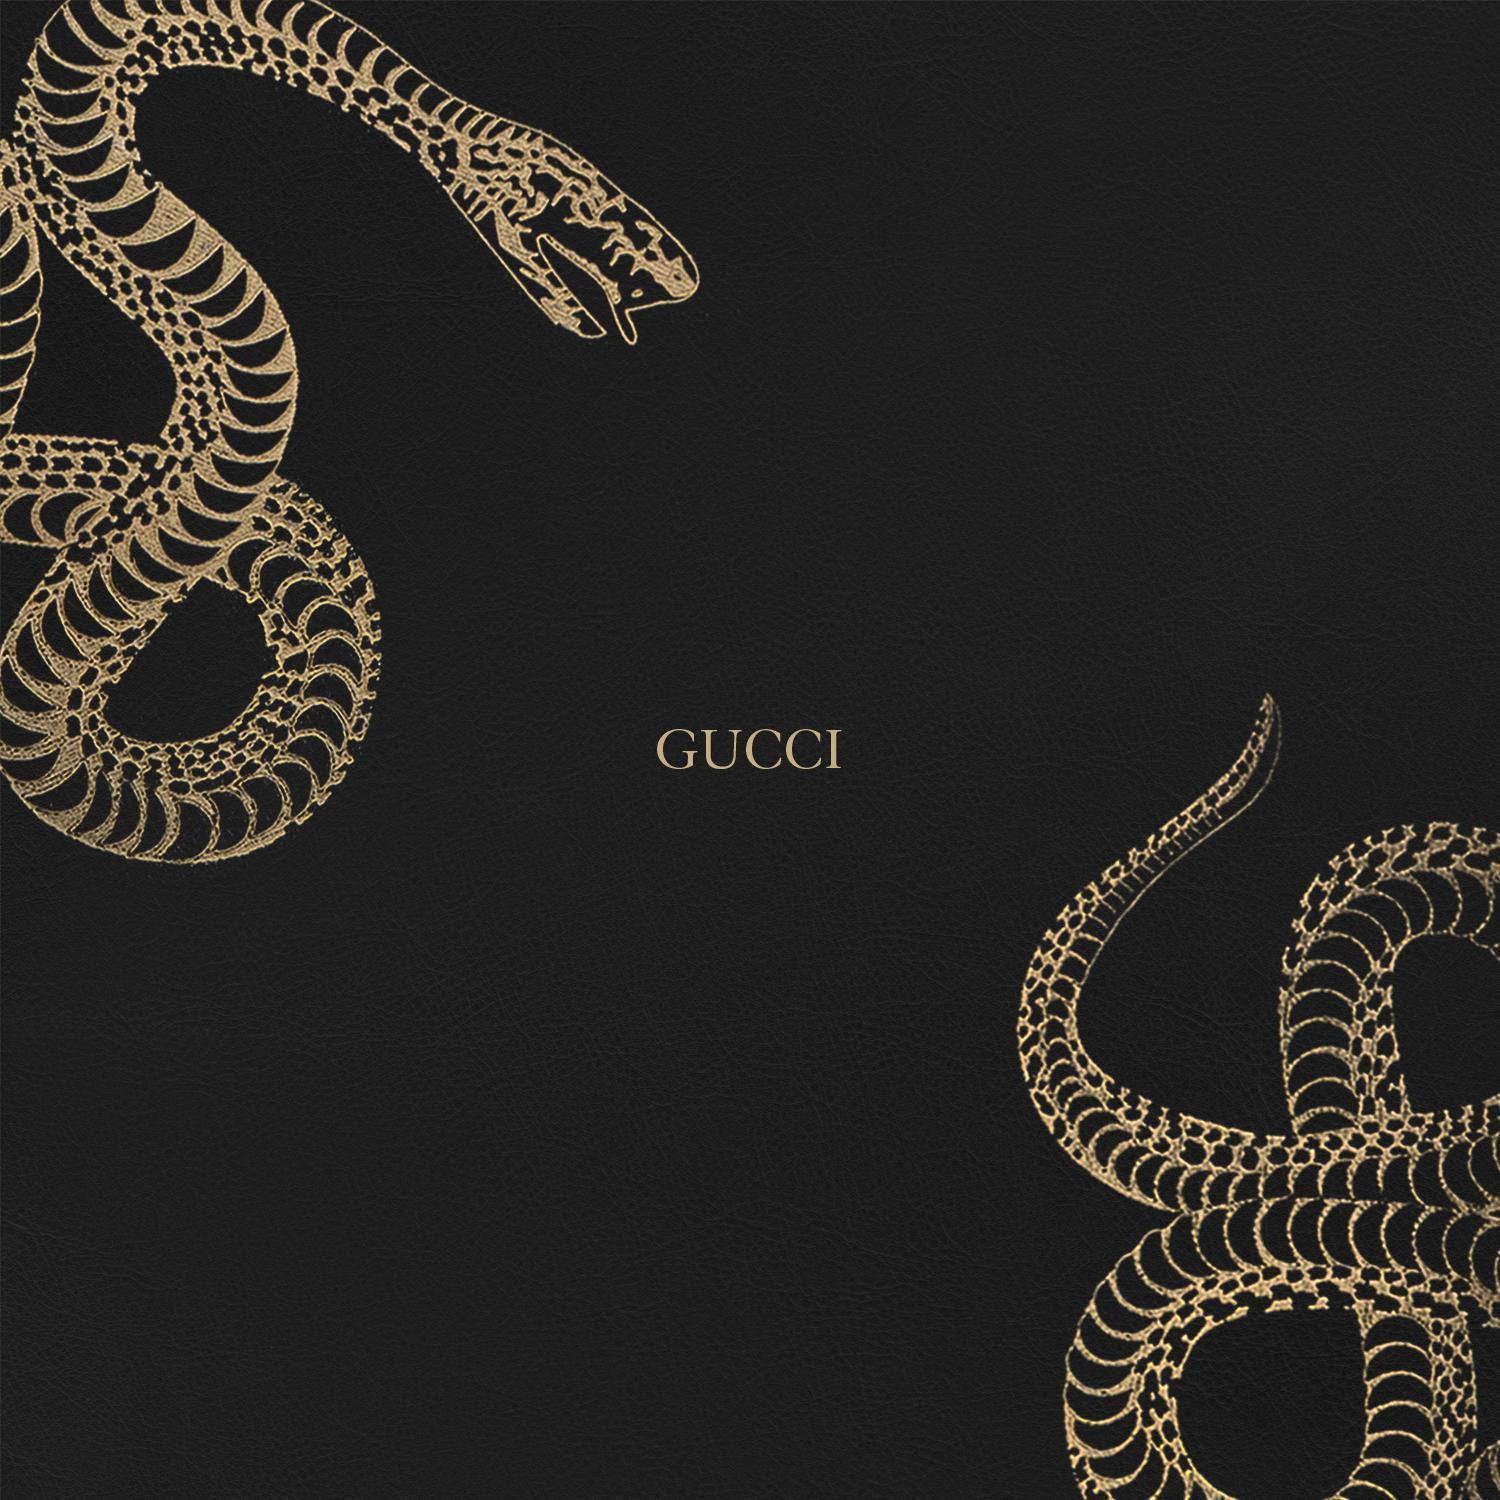 Golden Gucci Snakes Wallpaper